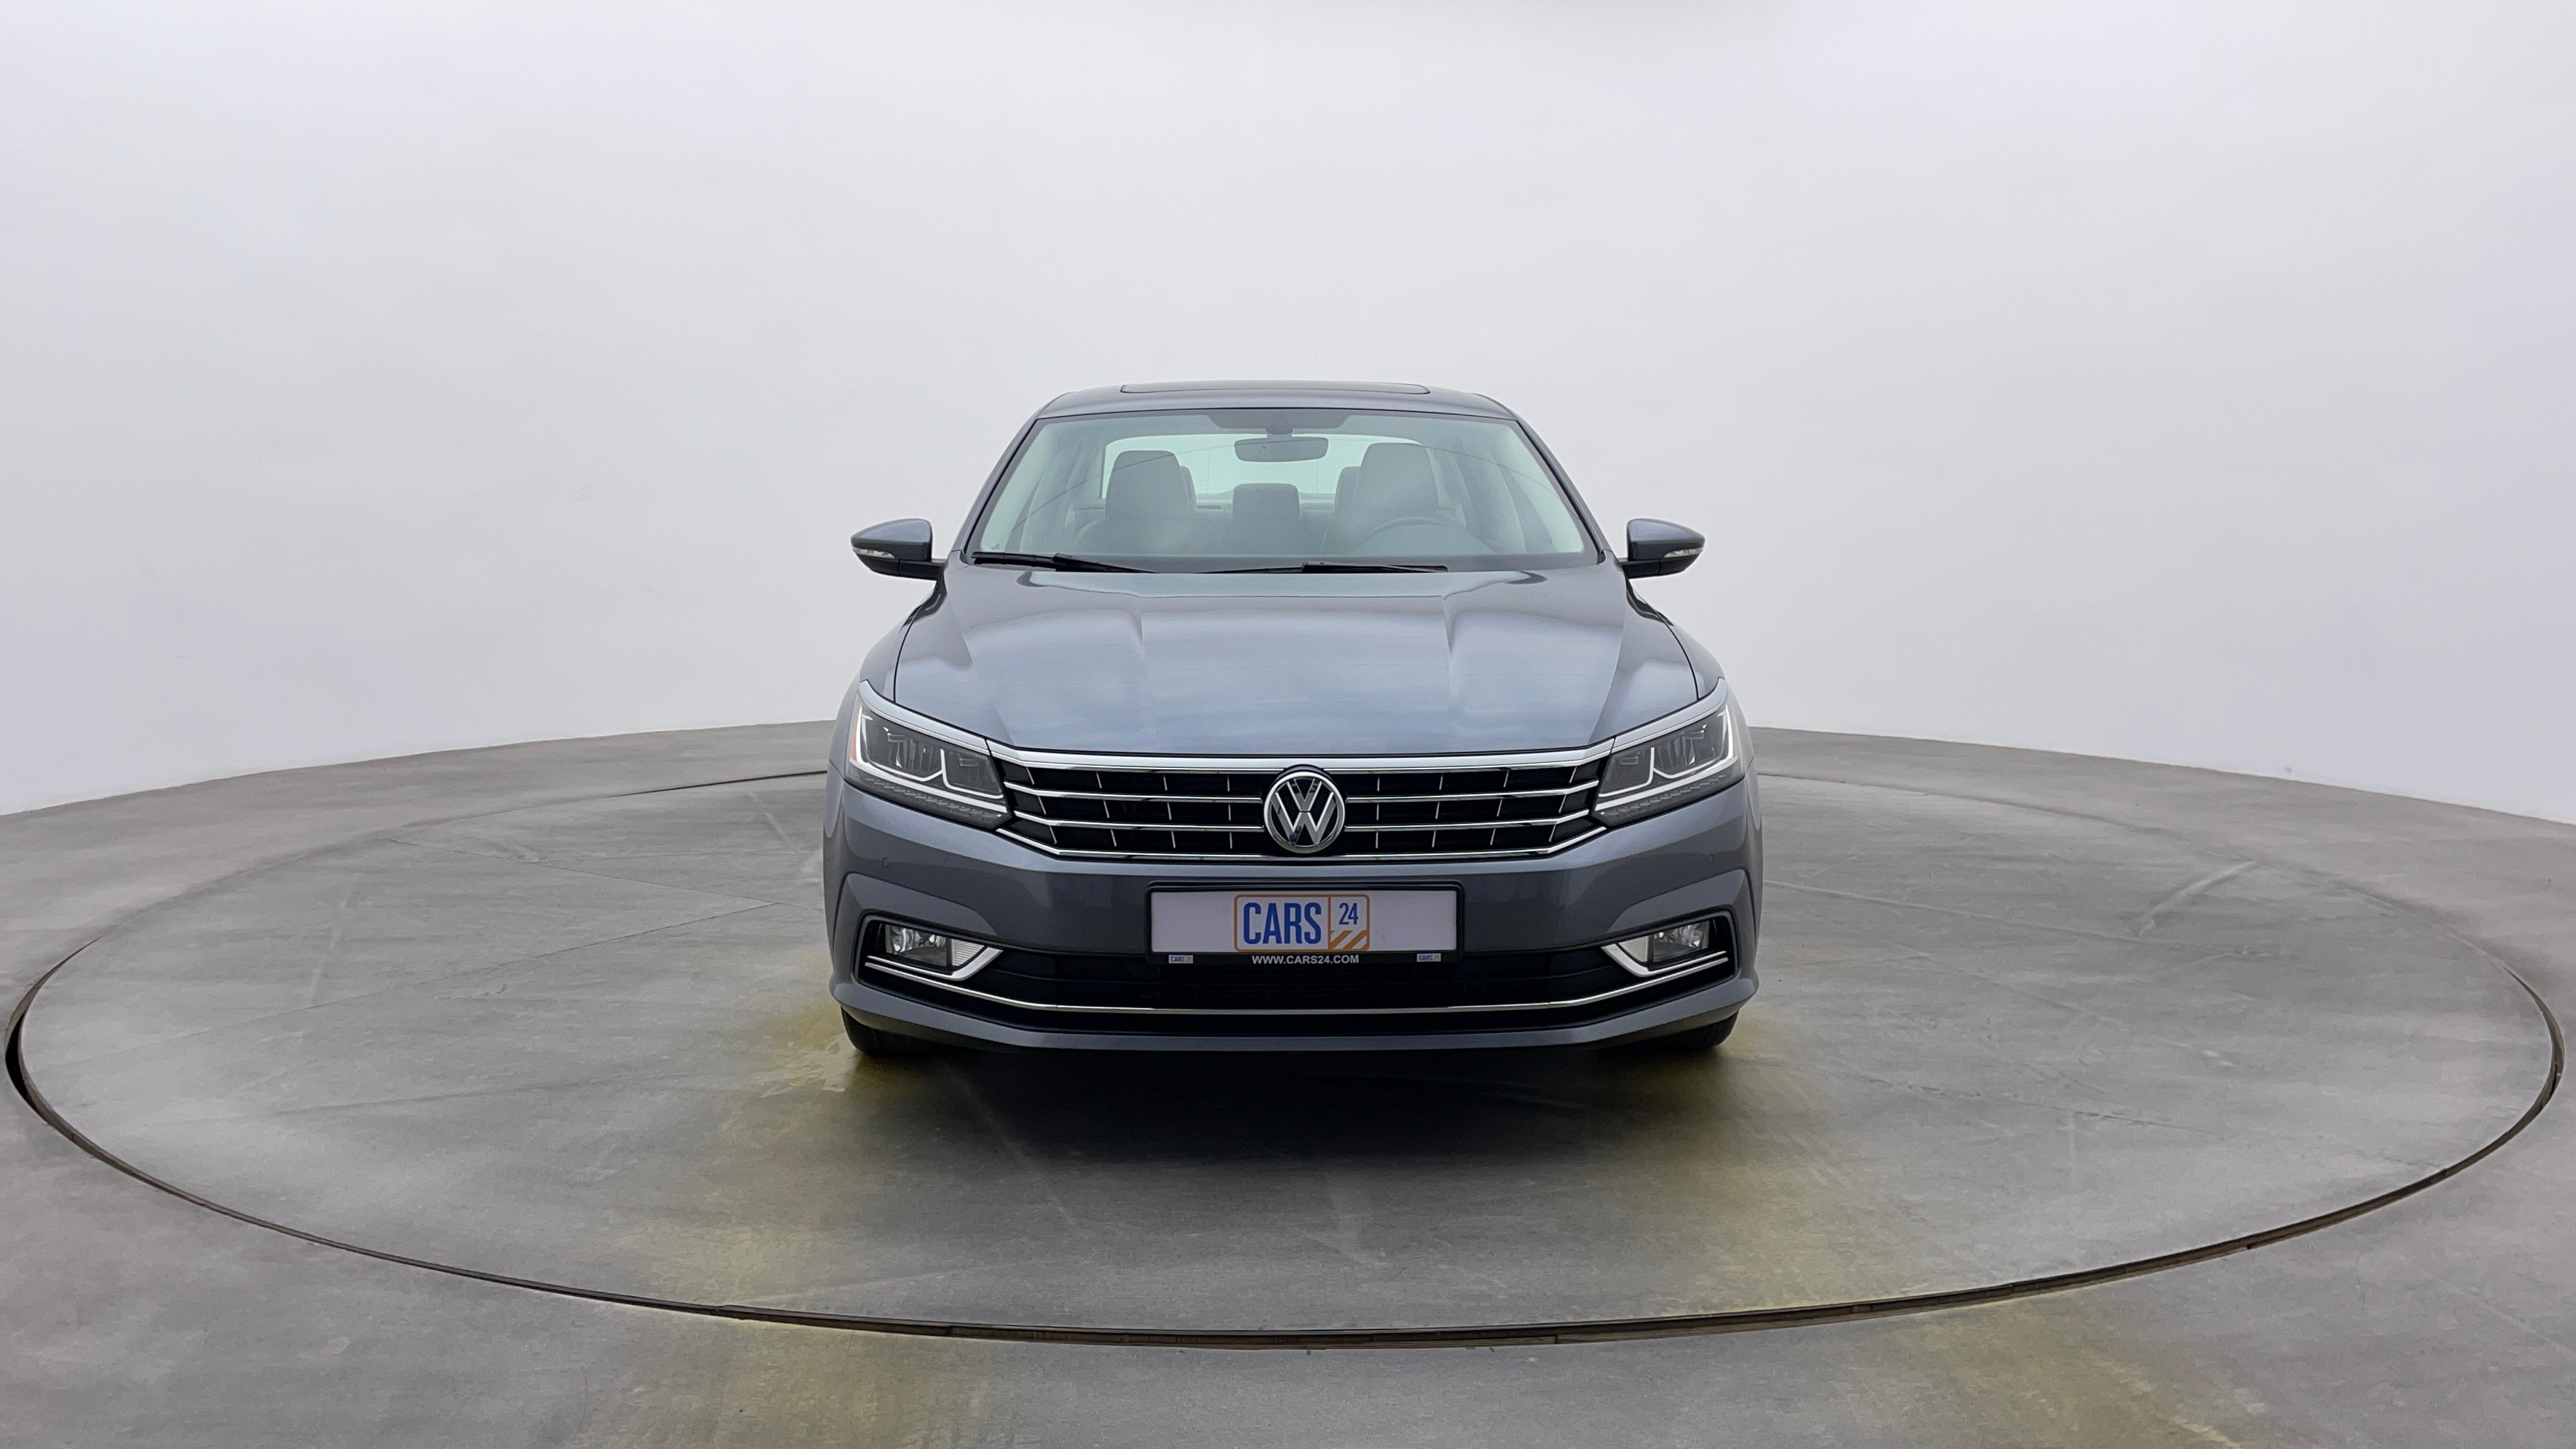 Volkswagen Passat-Front View